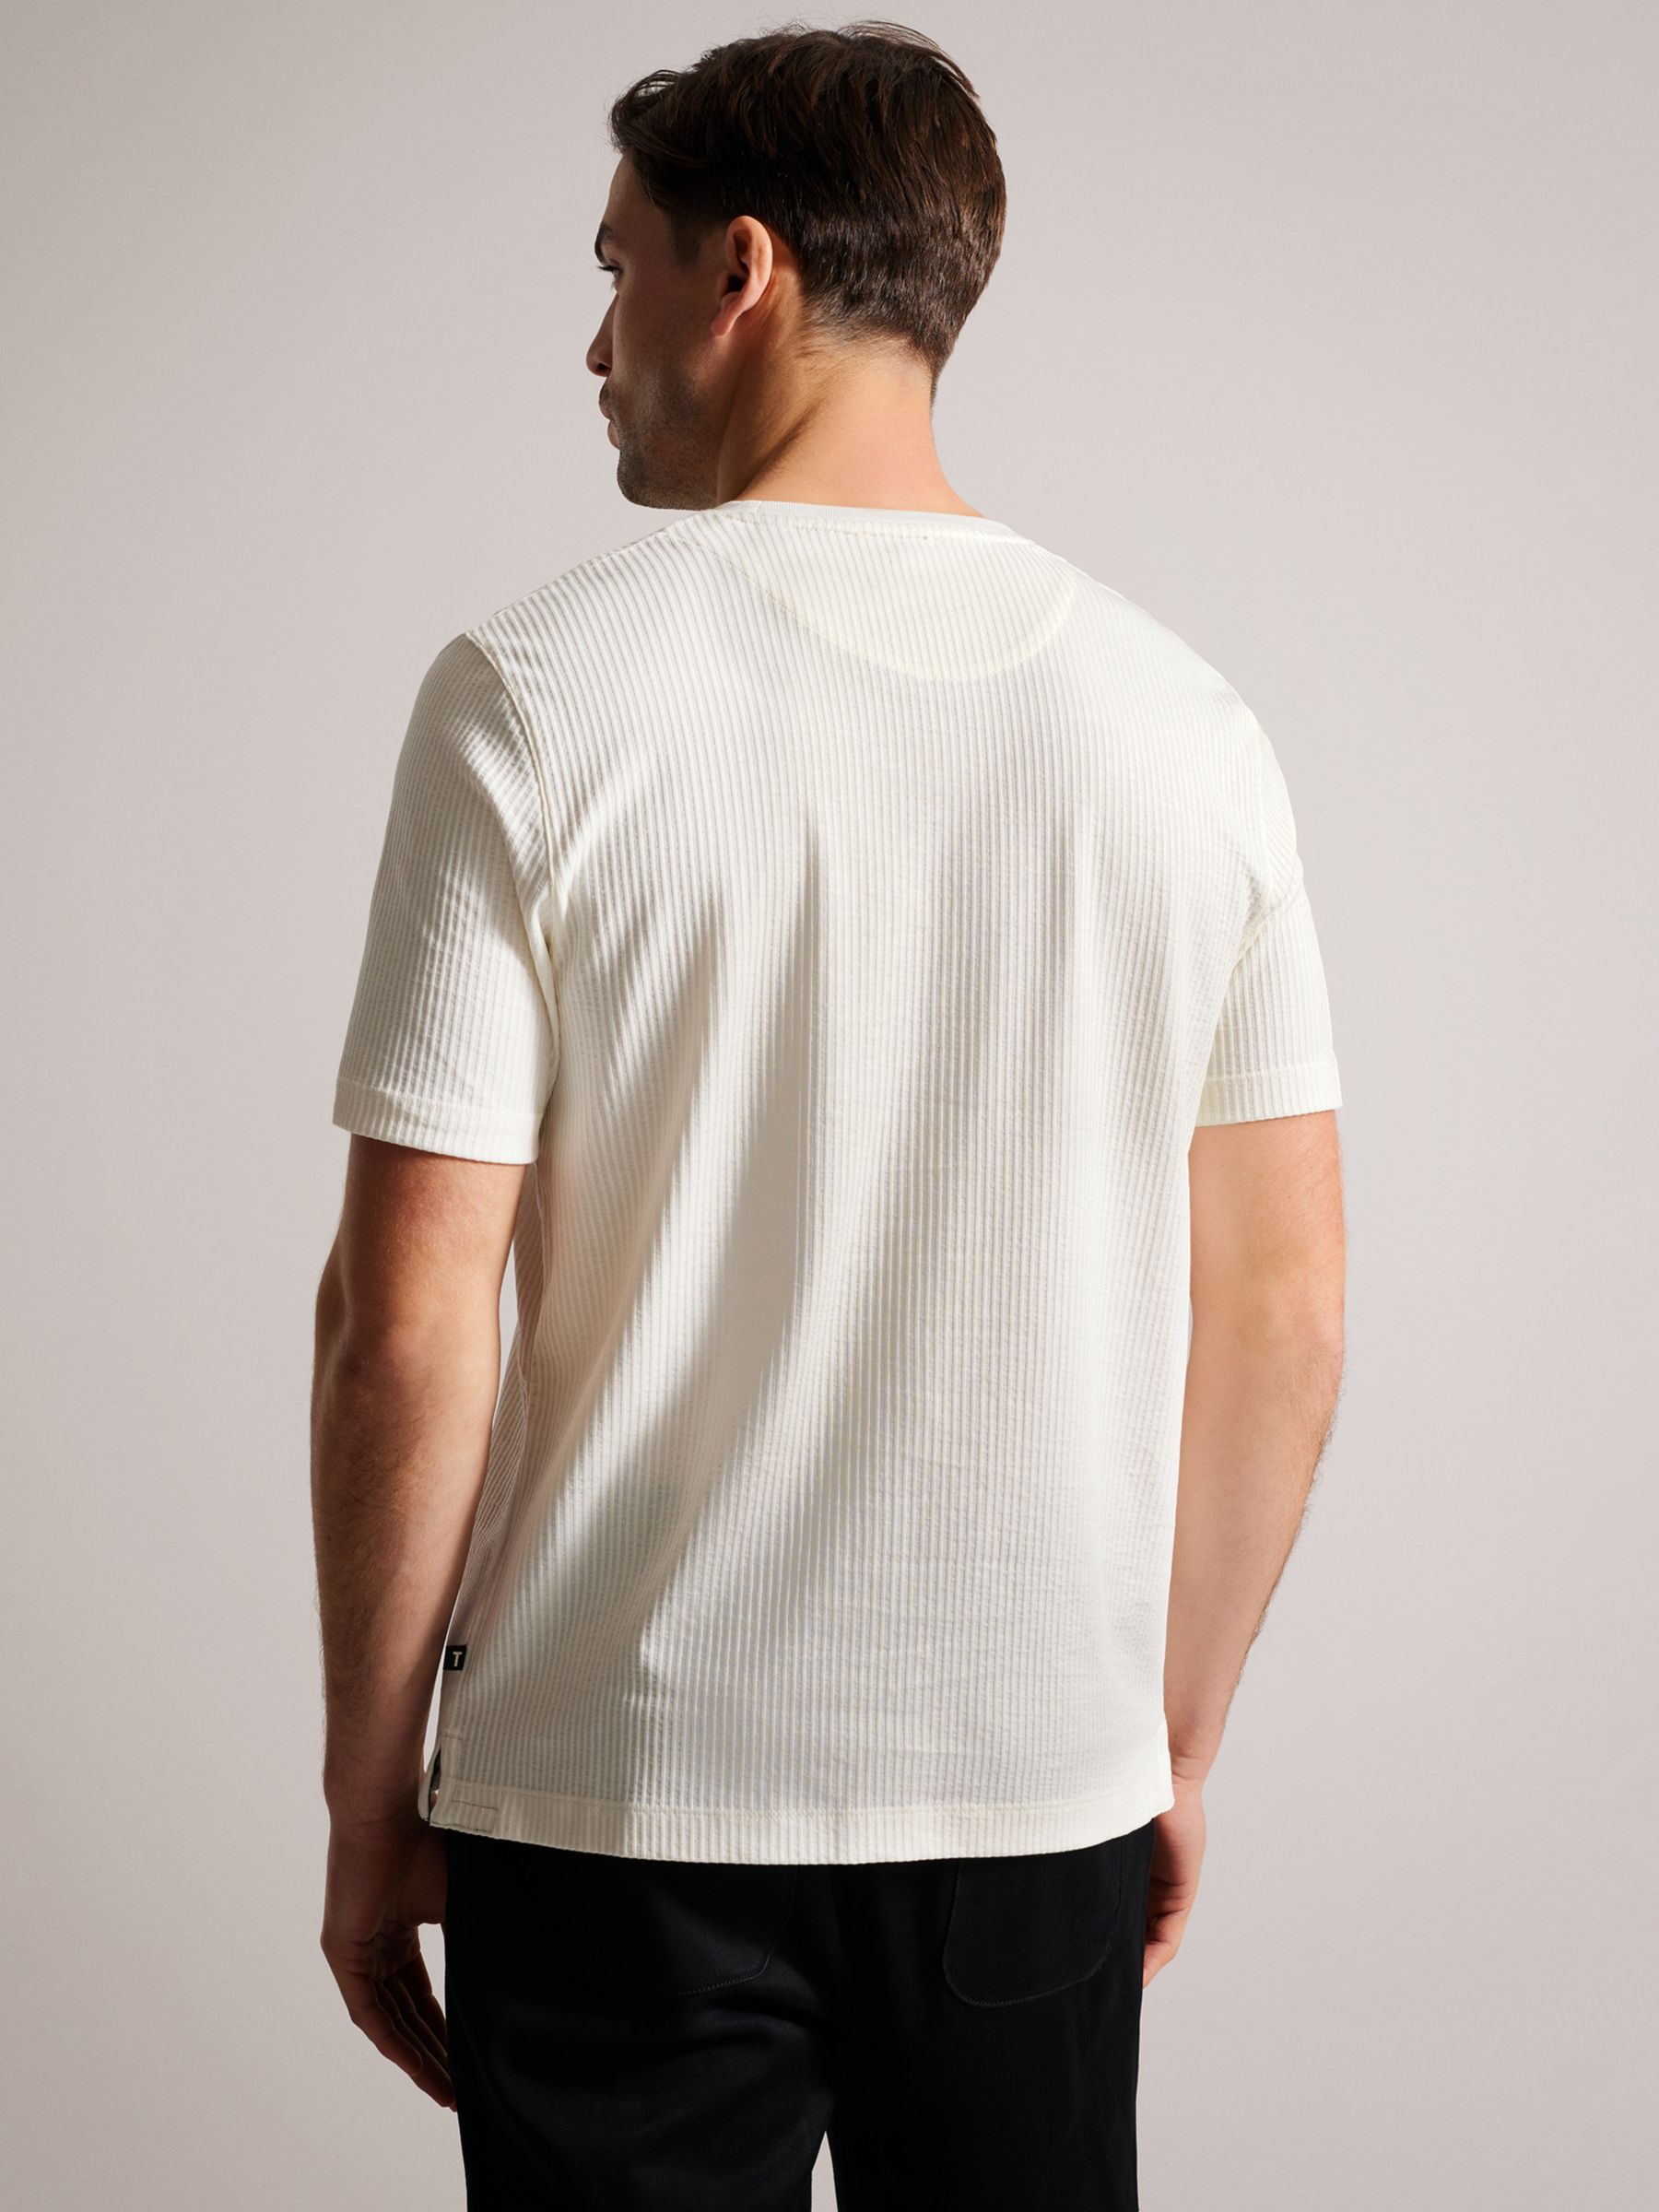 Ted Baker Rakes Textured T-Shirt, White, L